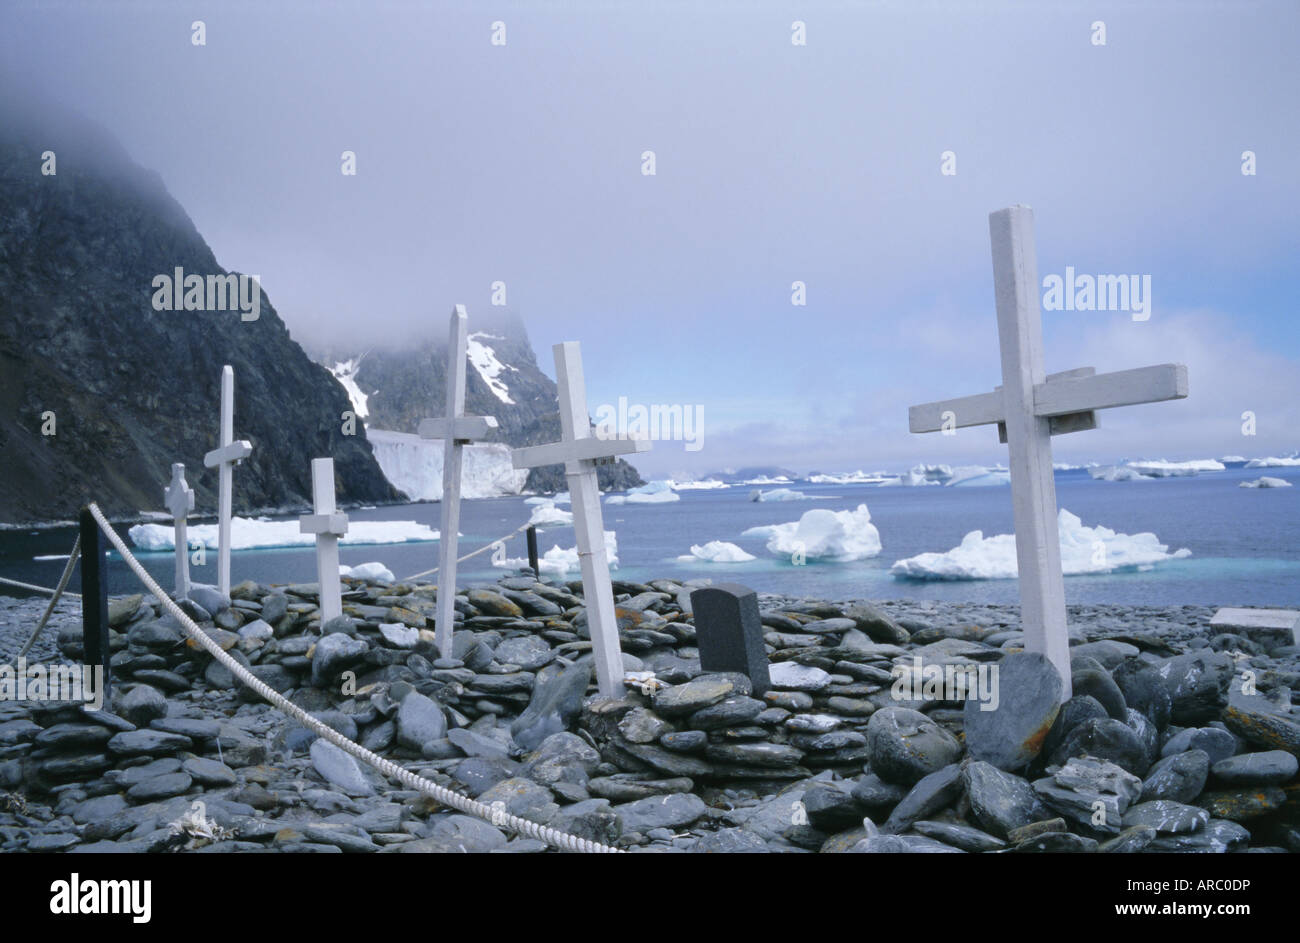 Grabstätte mit Gedenkstätten für Walfänger und Wissenschaftler, Laurie Island, Süd-Orkney-Inseln, Antarktis, Polarregionen Stockfoto